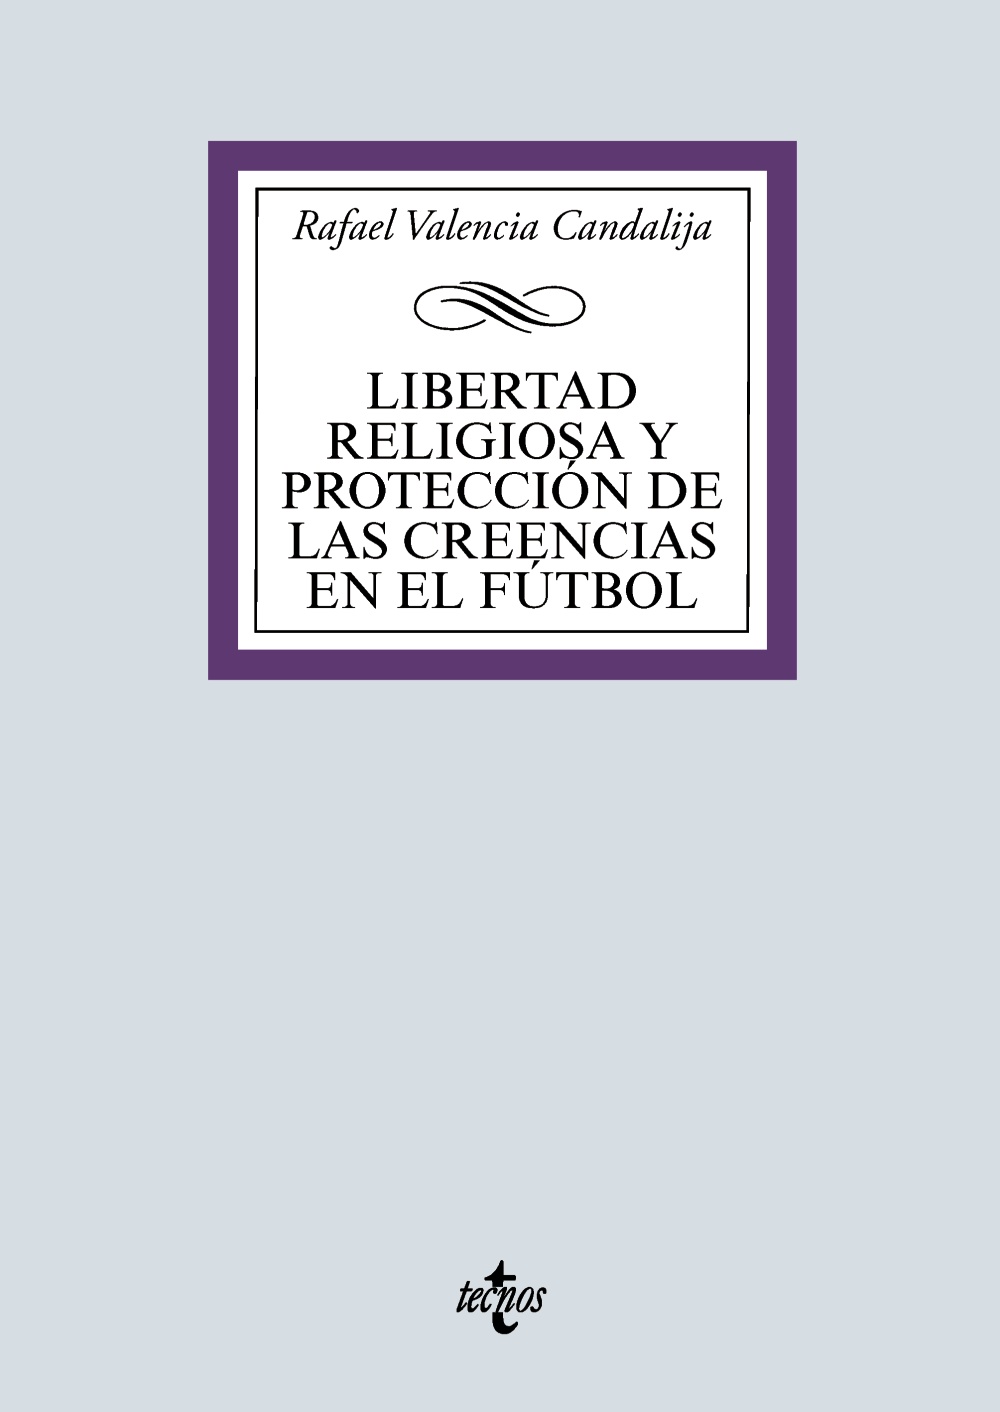 Imagen de portada del libro Libertad religiosa y protección de las creencias en el fútbol